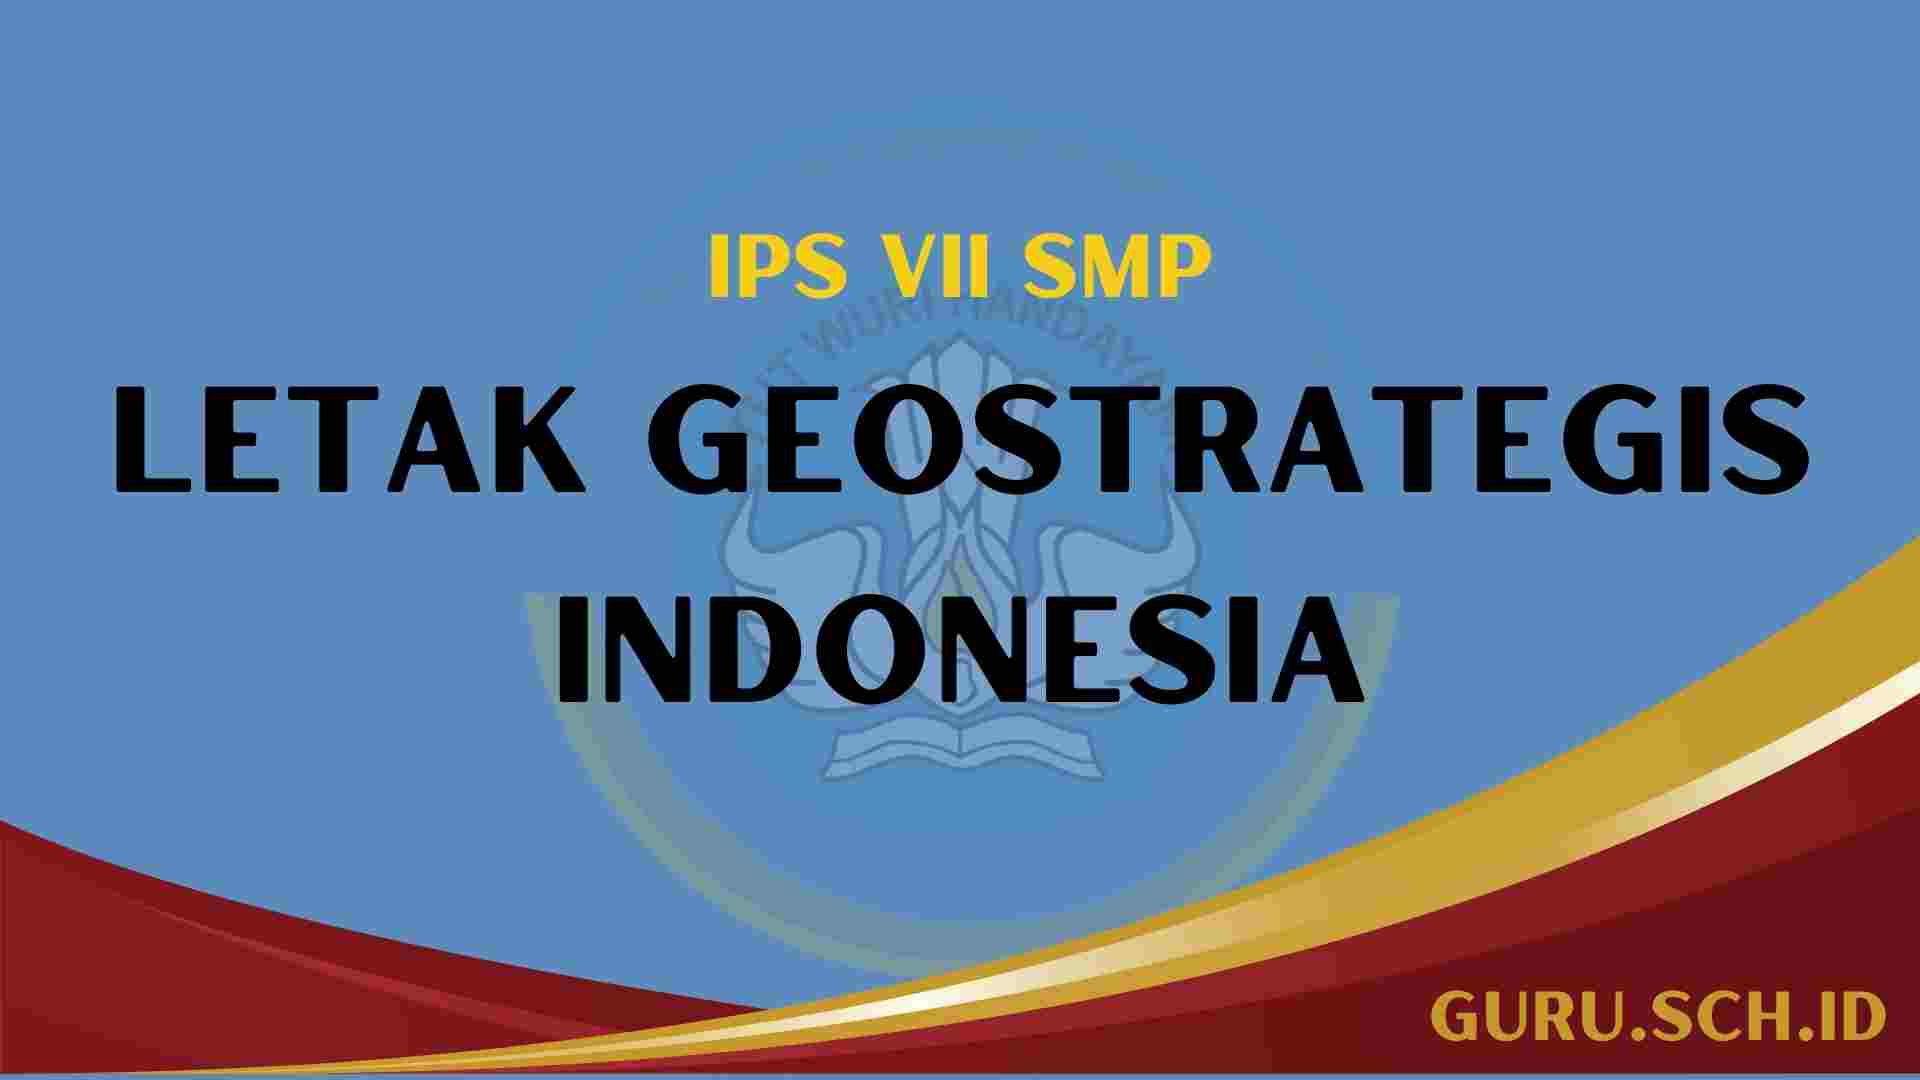 Letak Geostrategis Indonesia